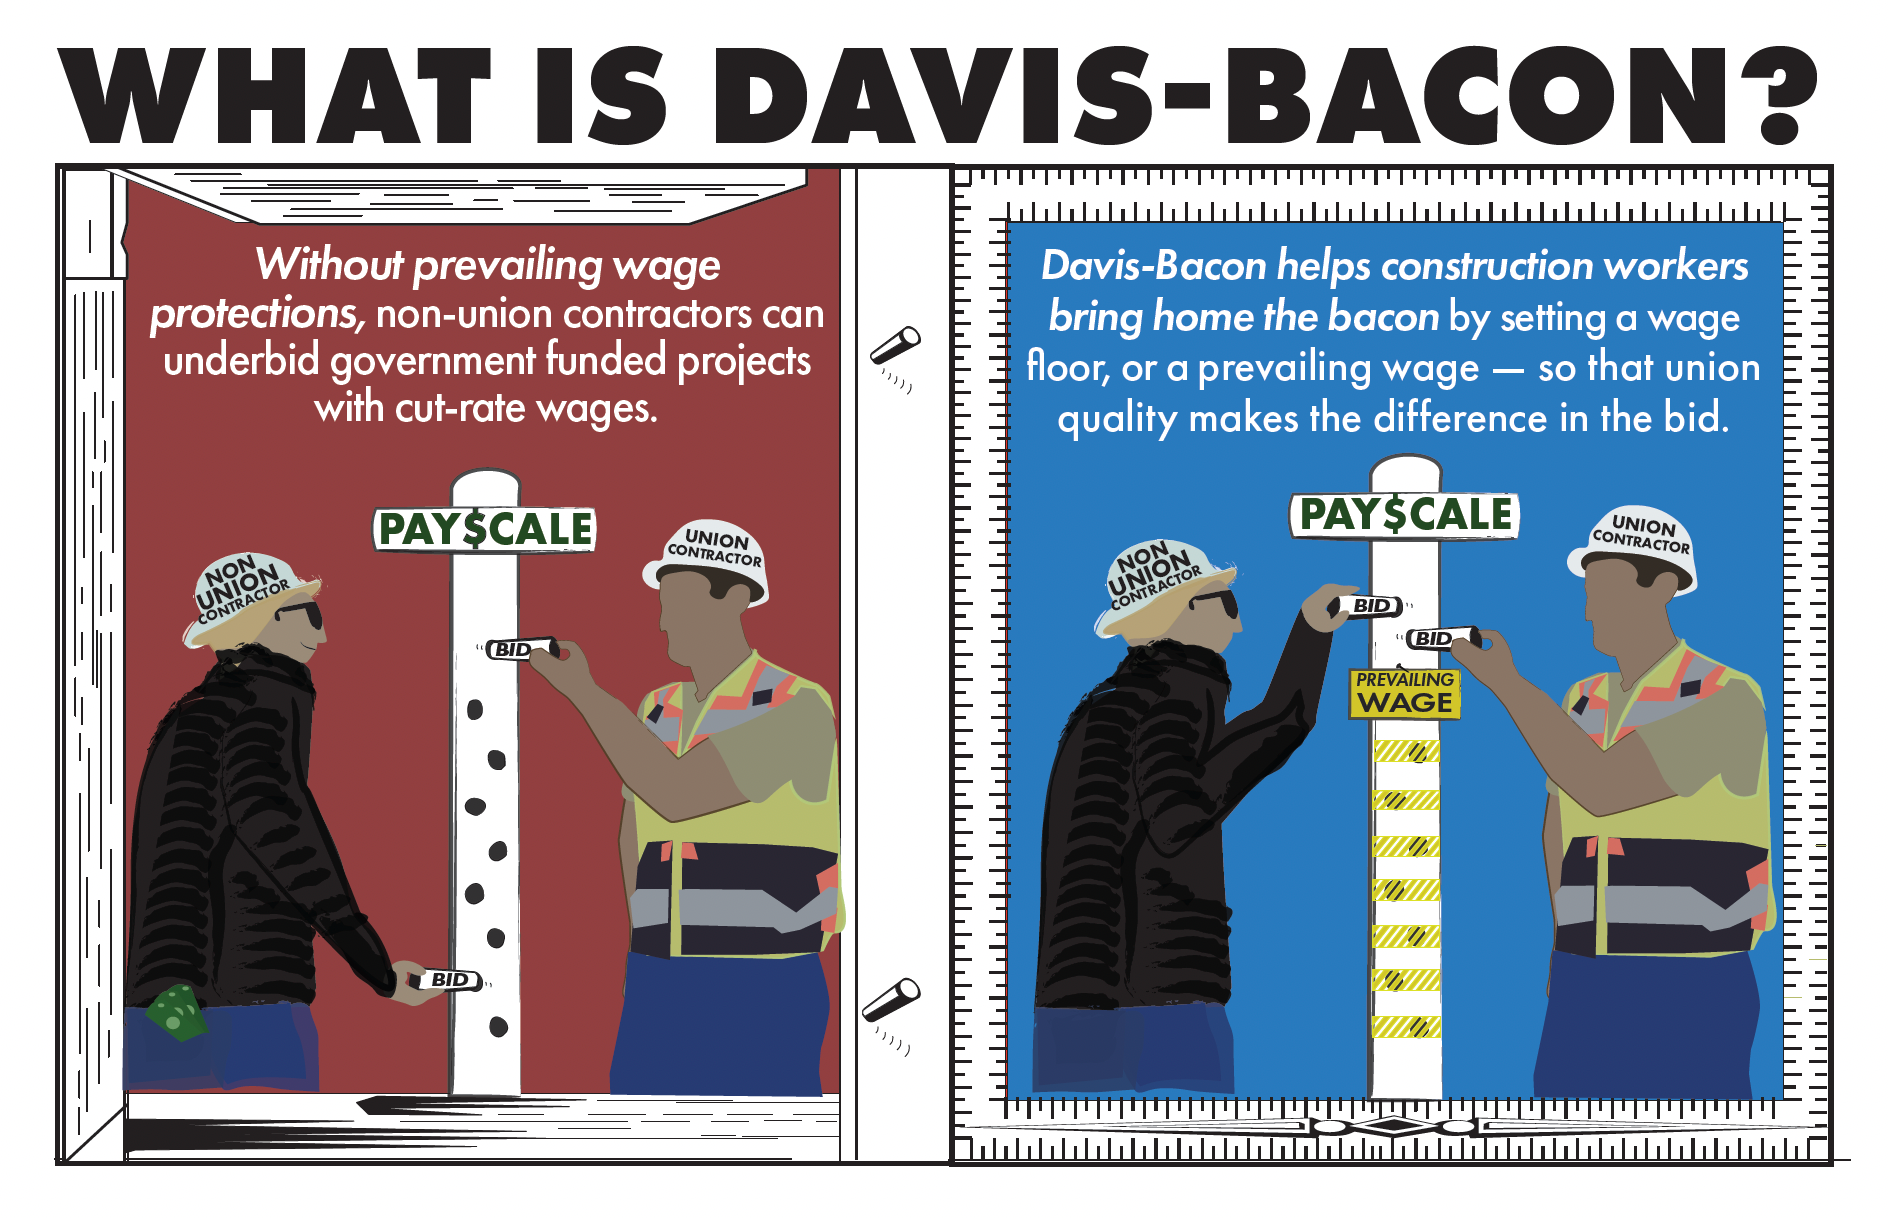 davis bacon